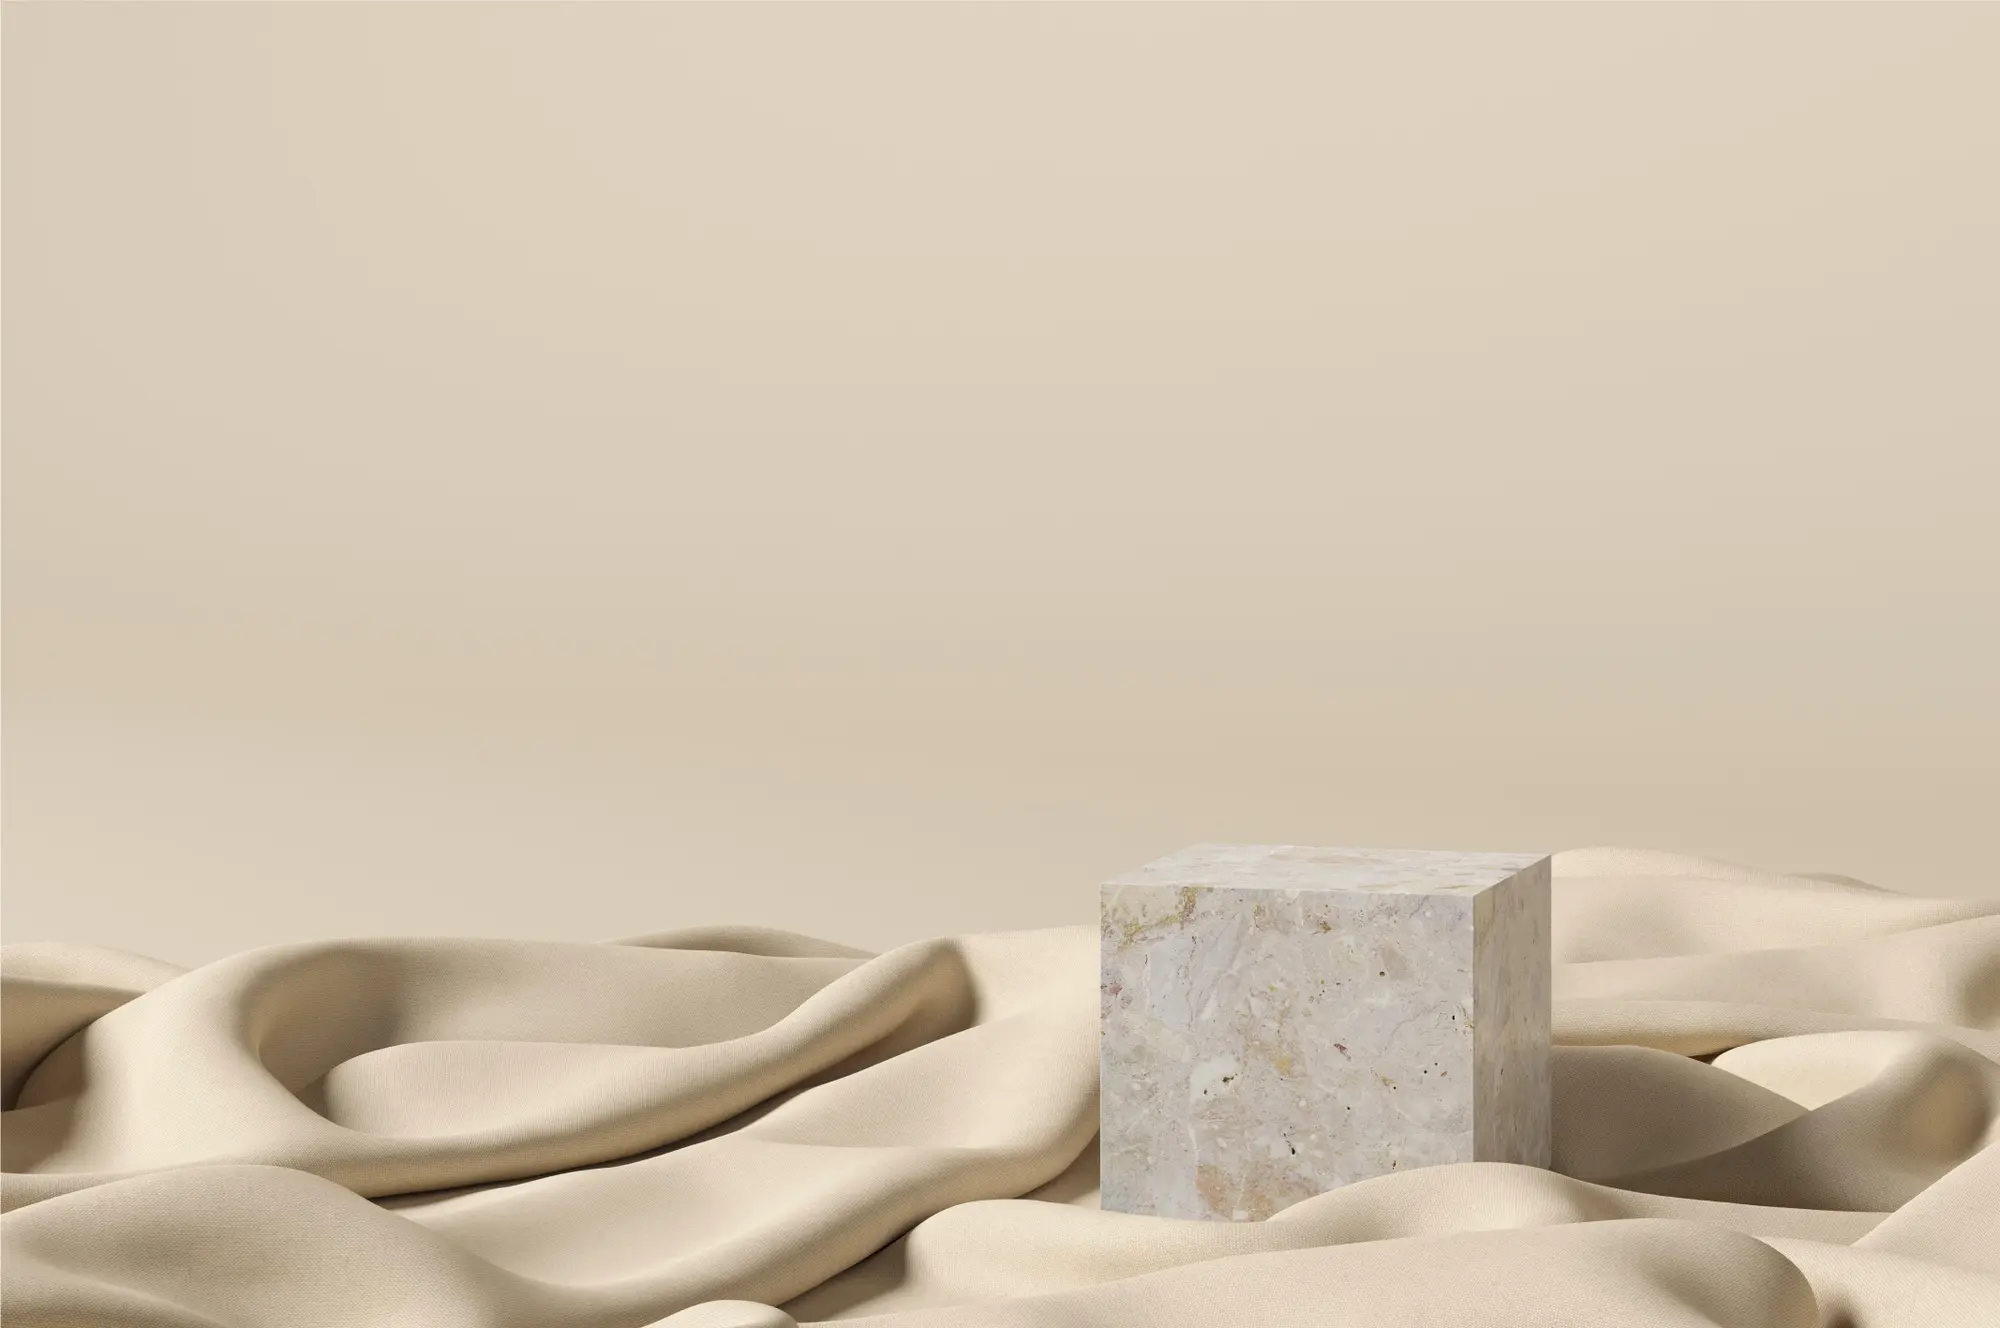 Imagem 3D com material de tecido, pedra e seda em fundo de cor creme